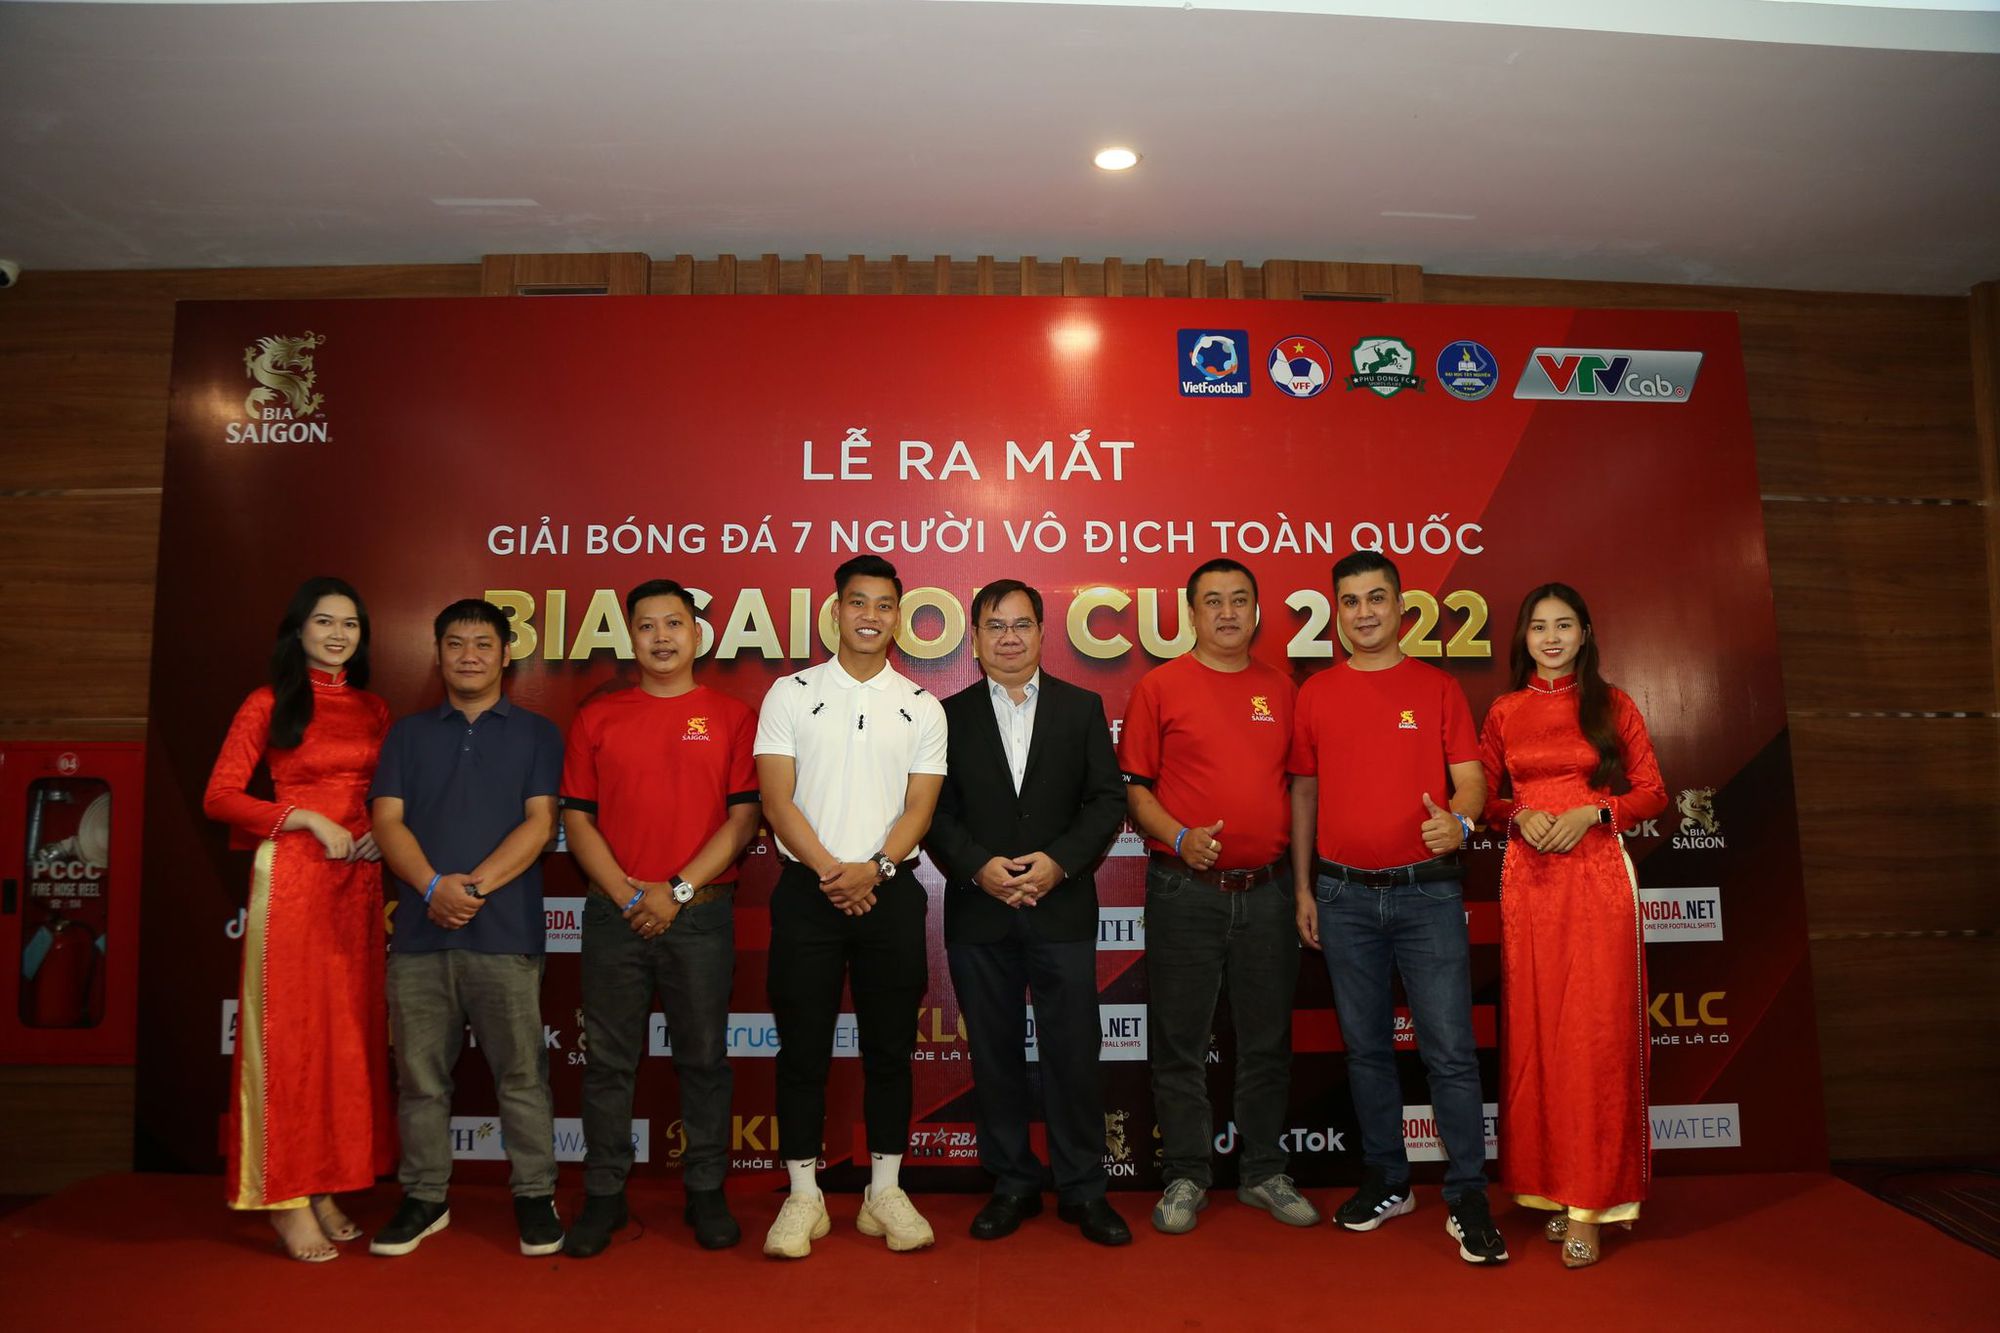 Giải bóng đá 7 người vô địch toàn quốc chính thức khởi động tại Tây Nguyên - Ảnh 1.